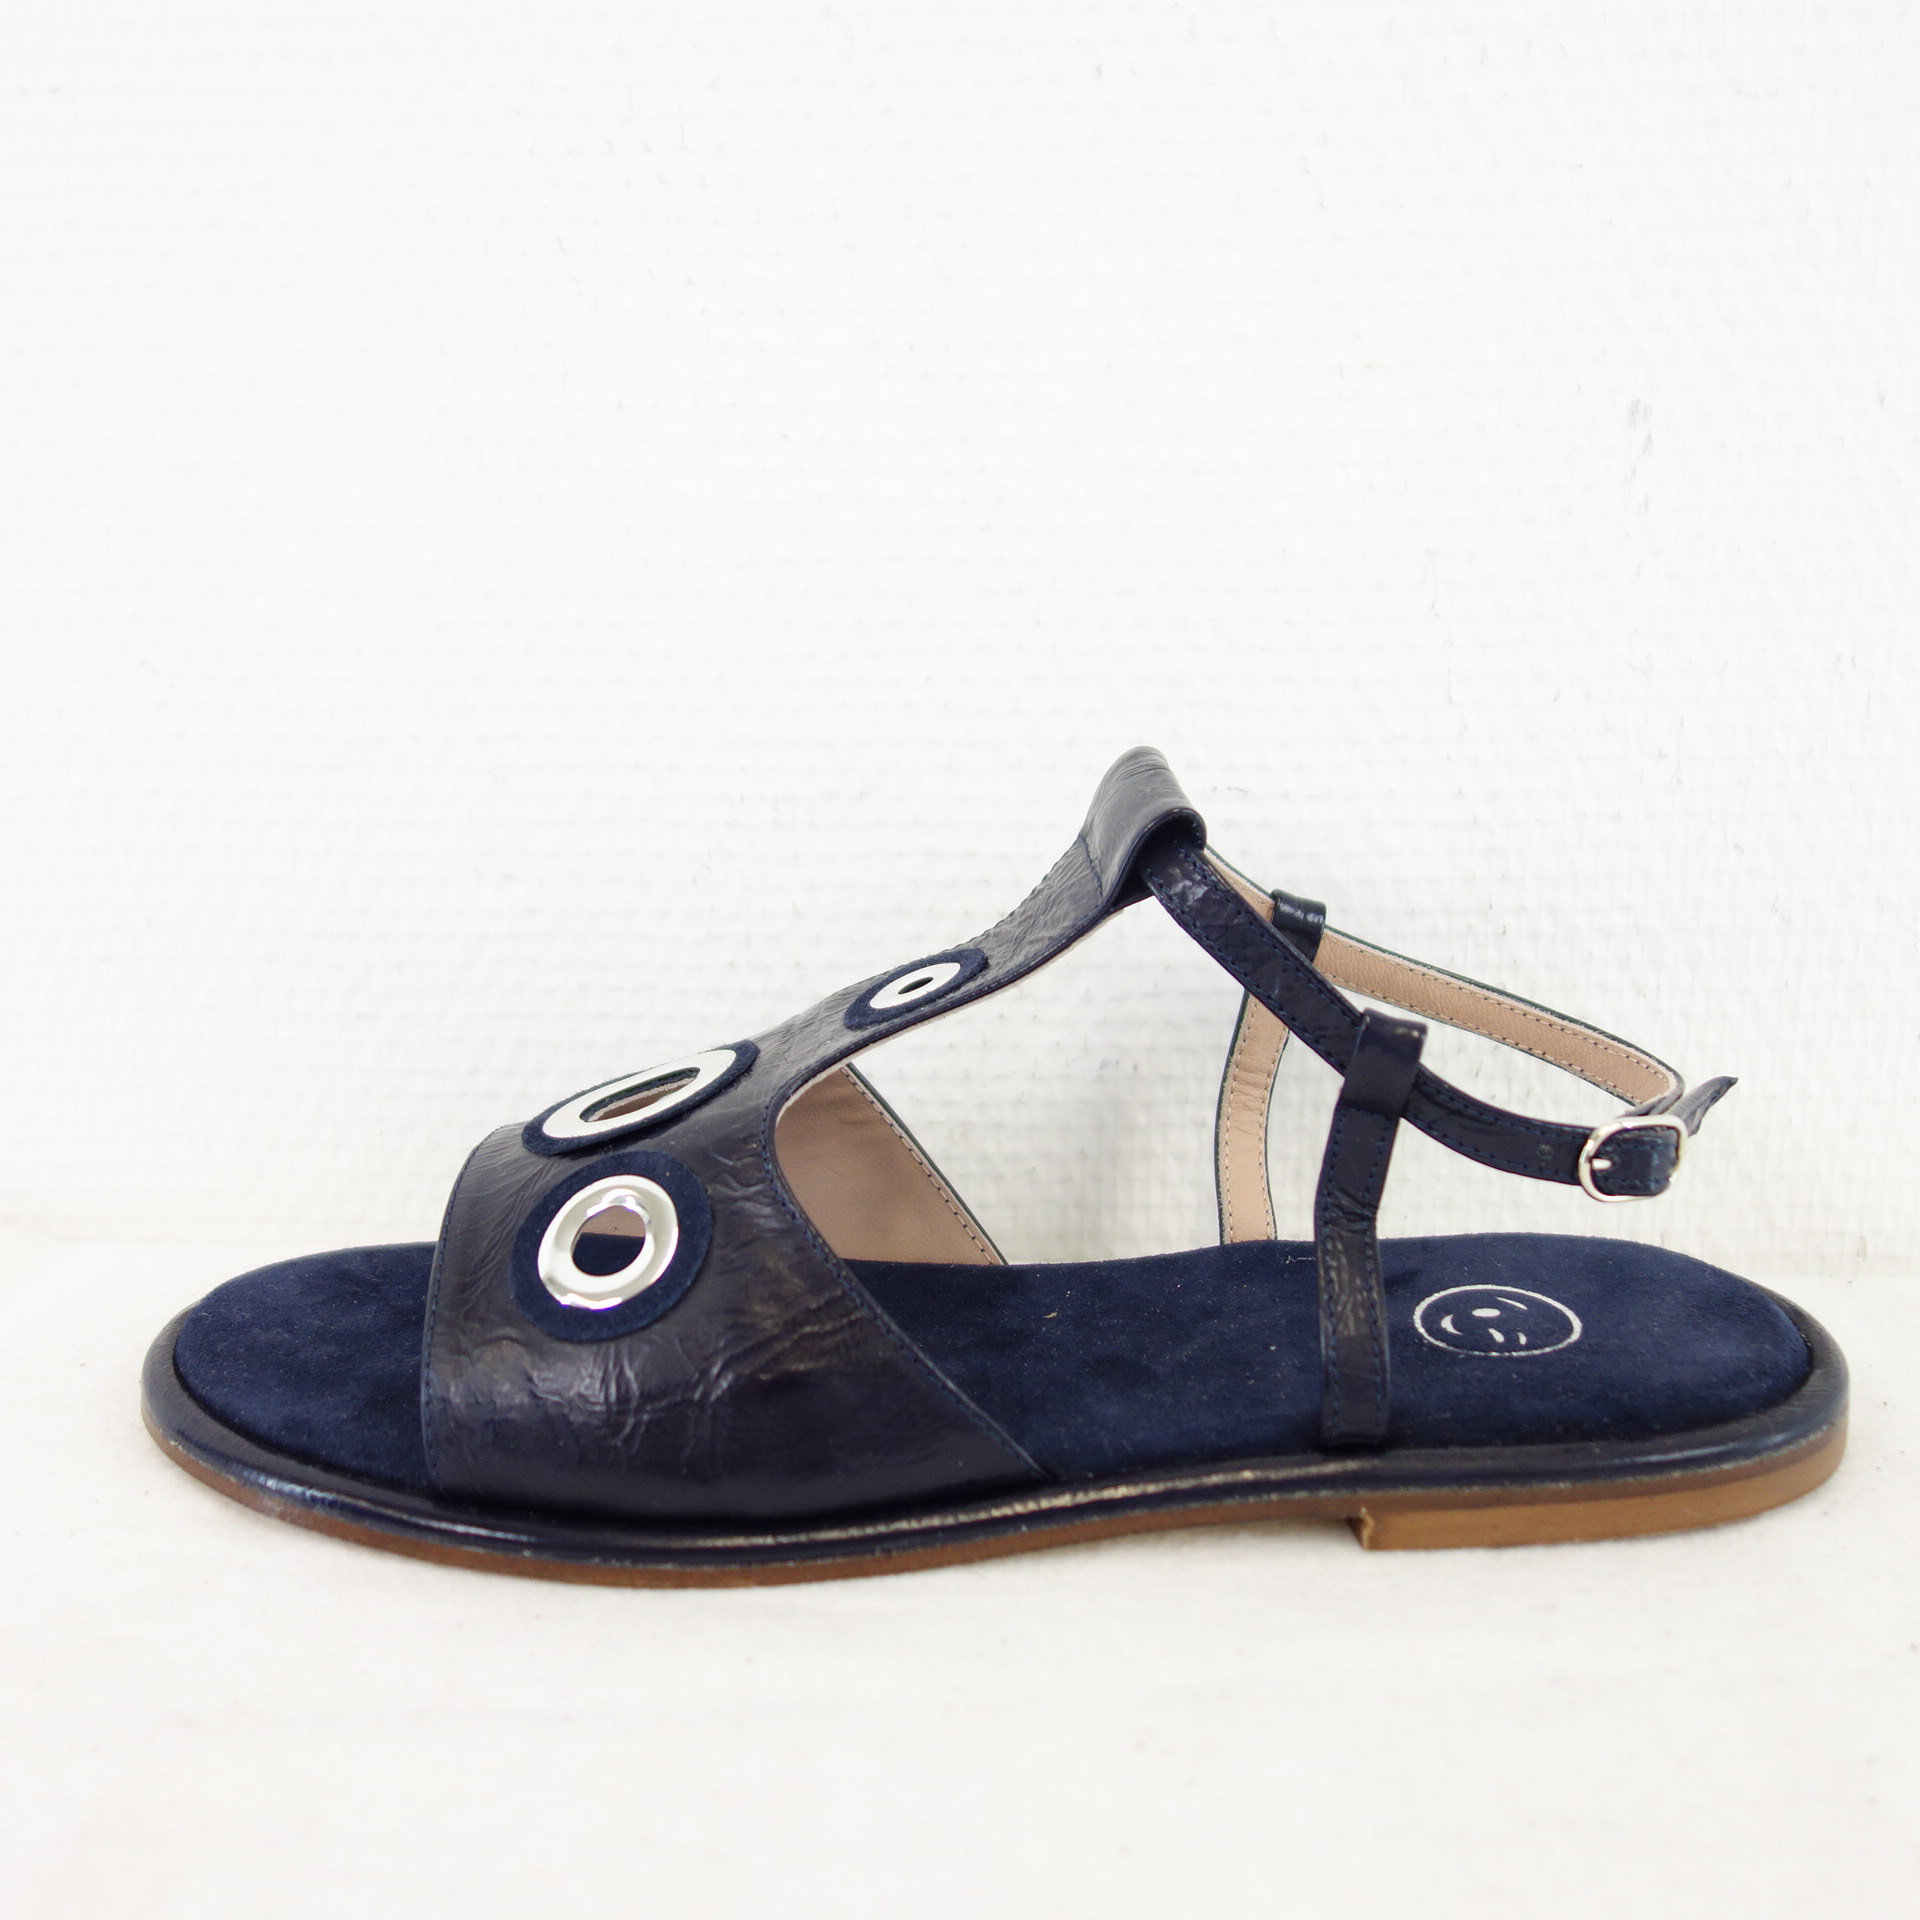 LORENA PAGGI Damen Sommer Schuhe Flache Sandalen Slingback Blau Leder Gr 38 ( 39 )